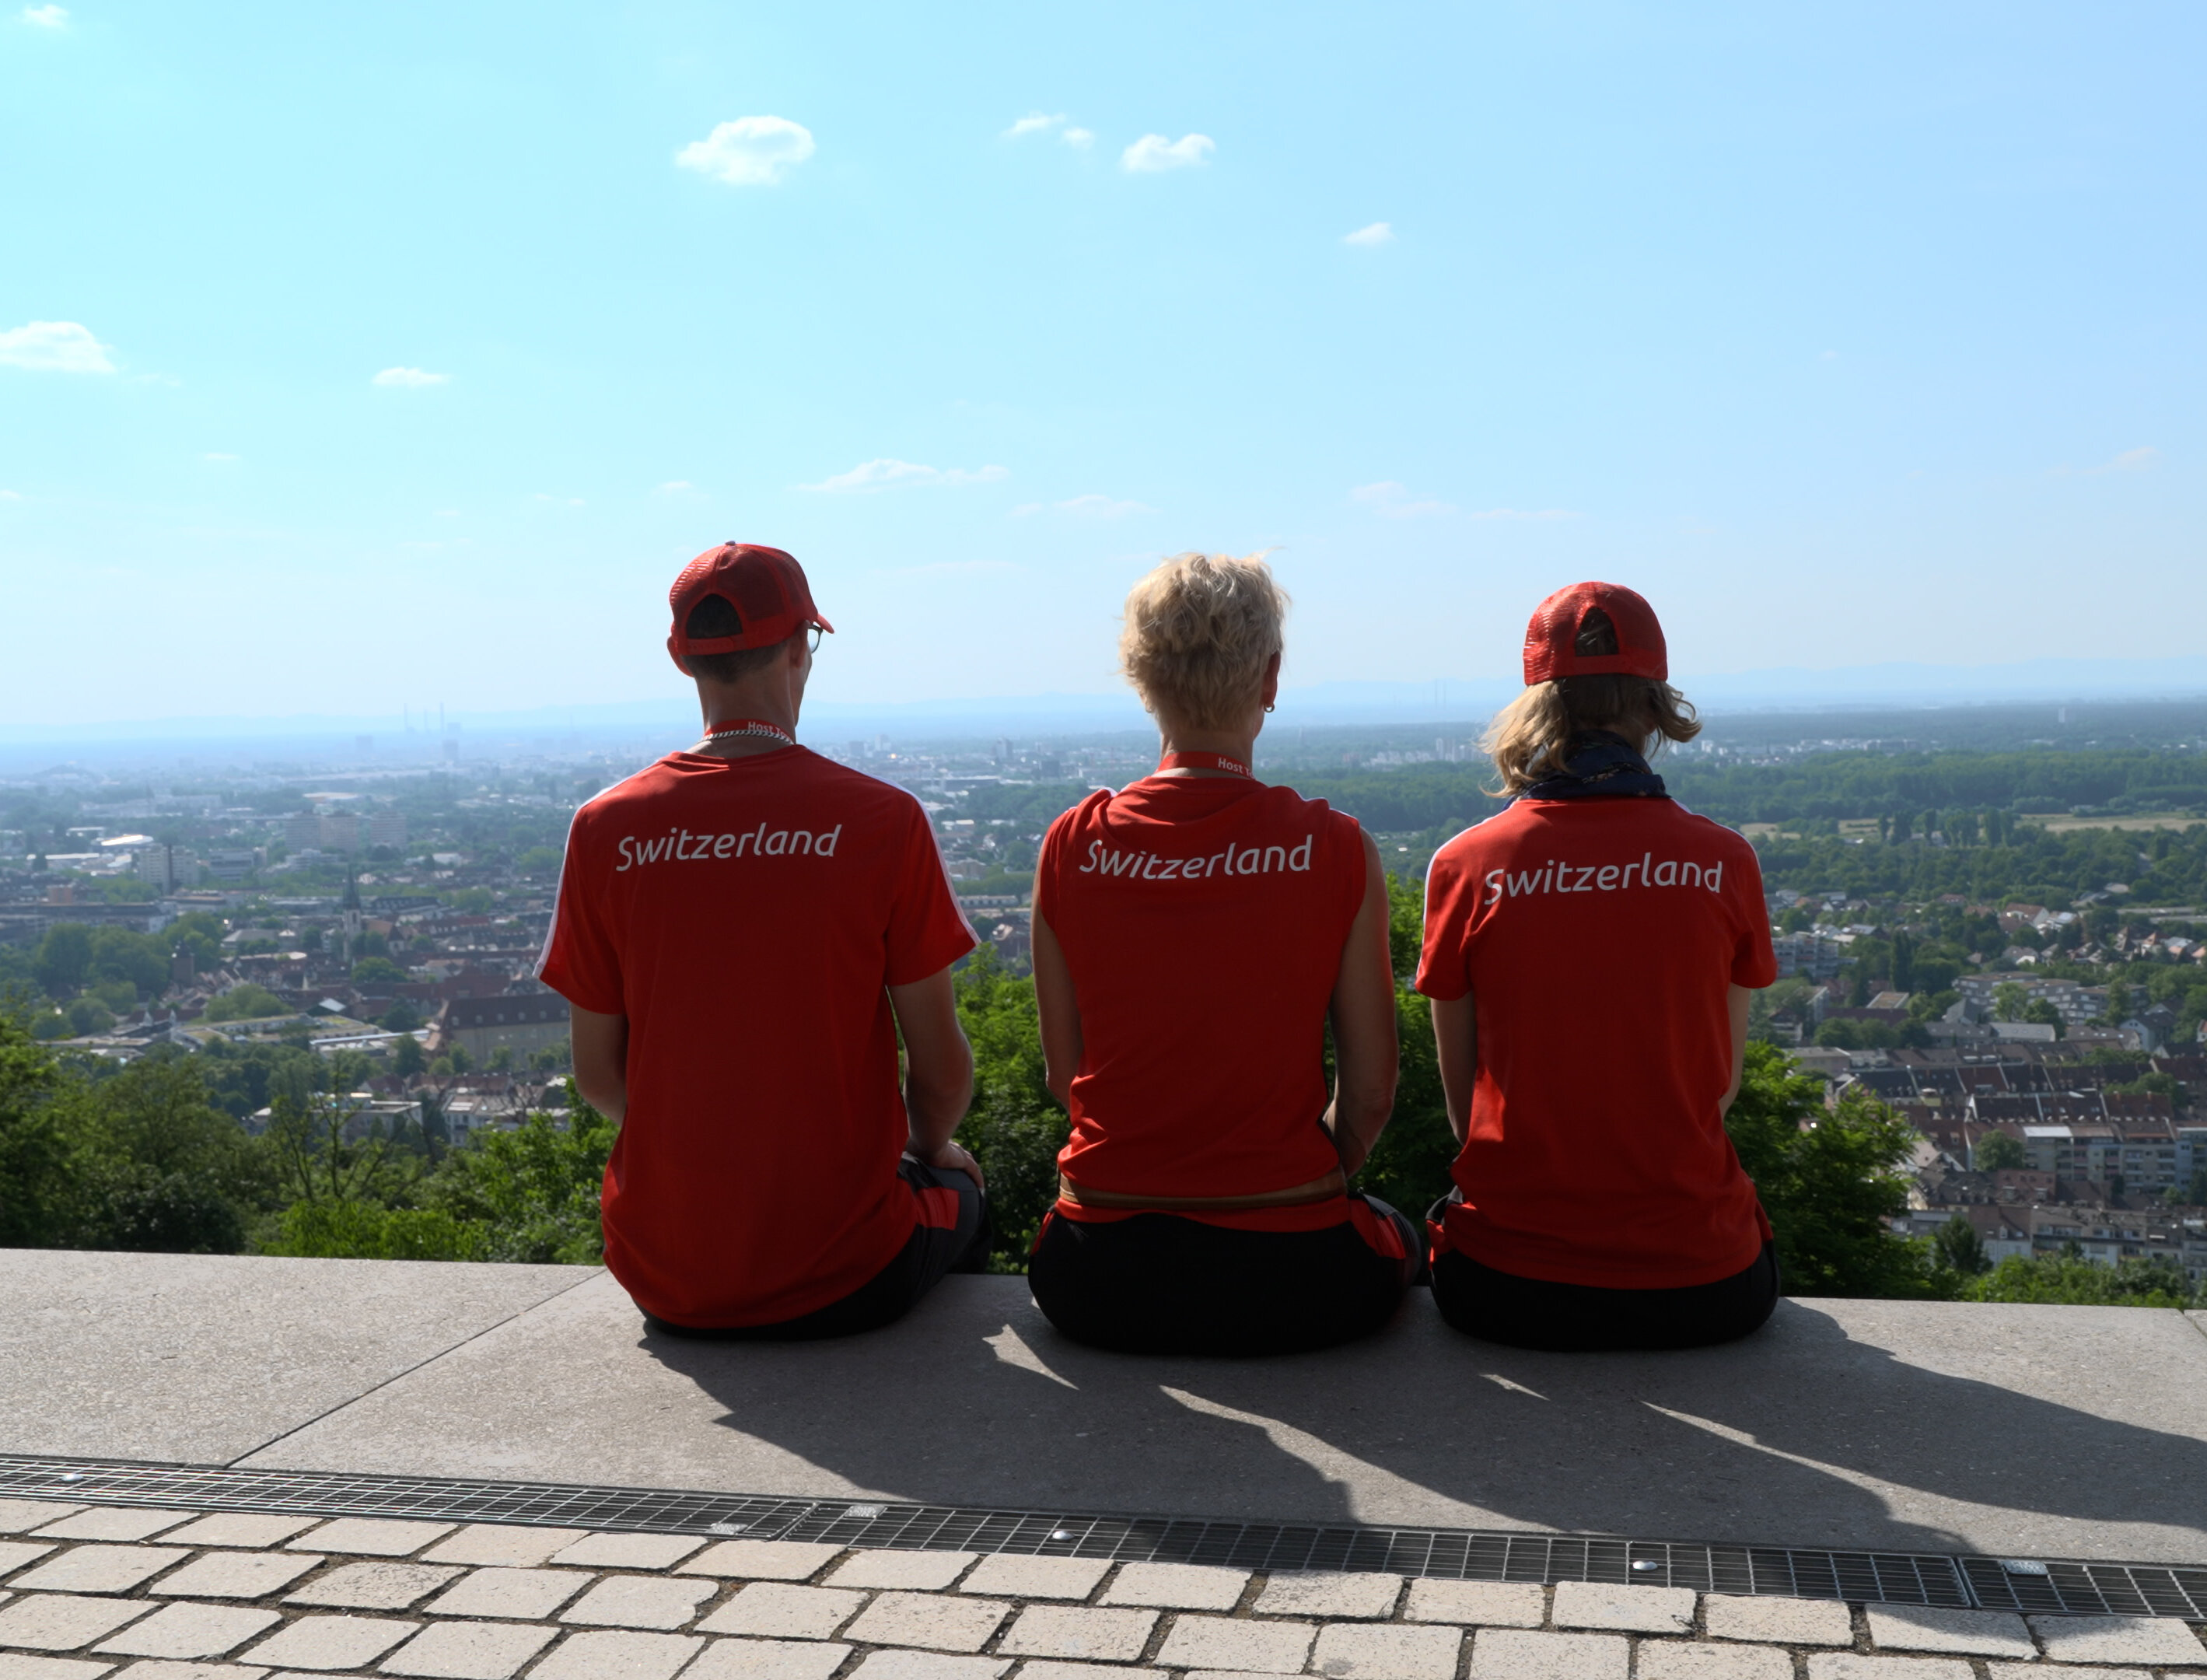 Die Schweizer Delegation zu den Special Olympics 2023 ist in Karlsruhe zu Gast